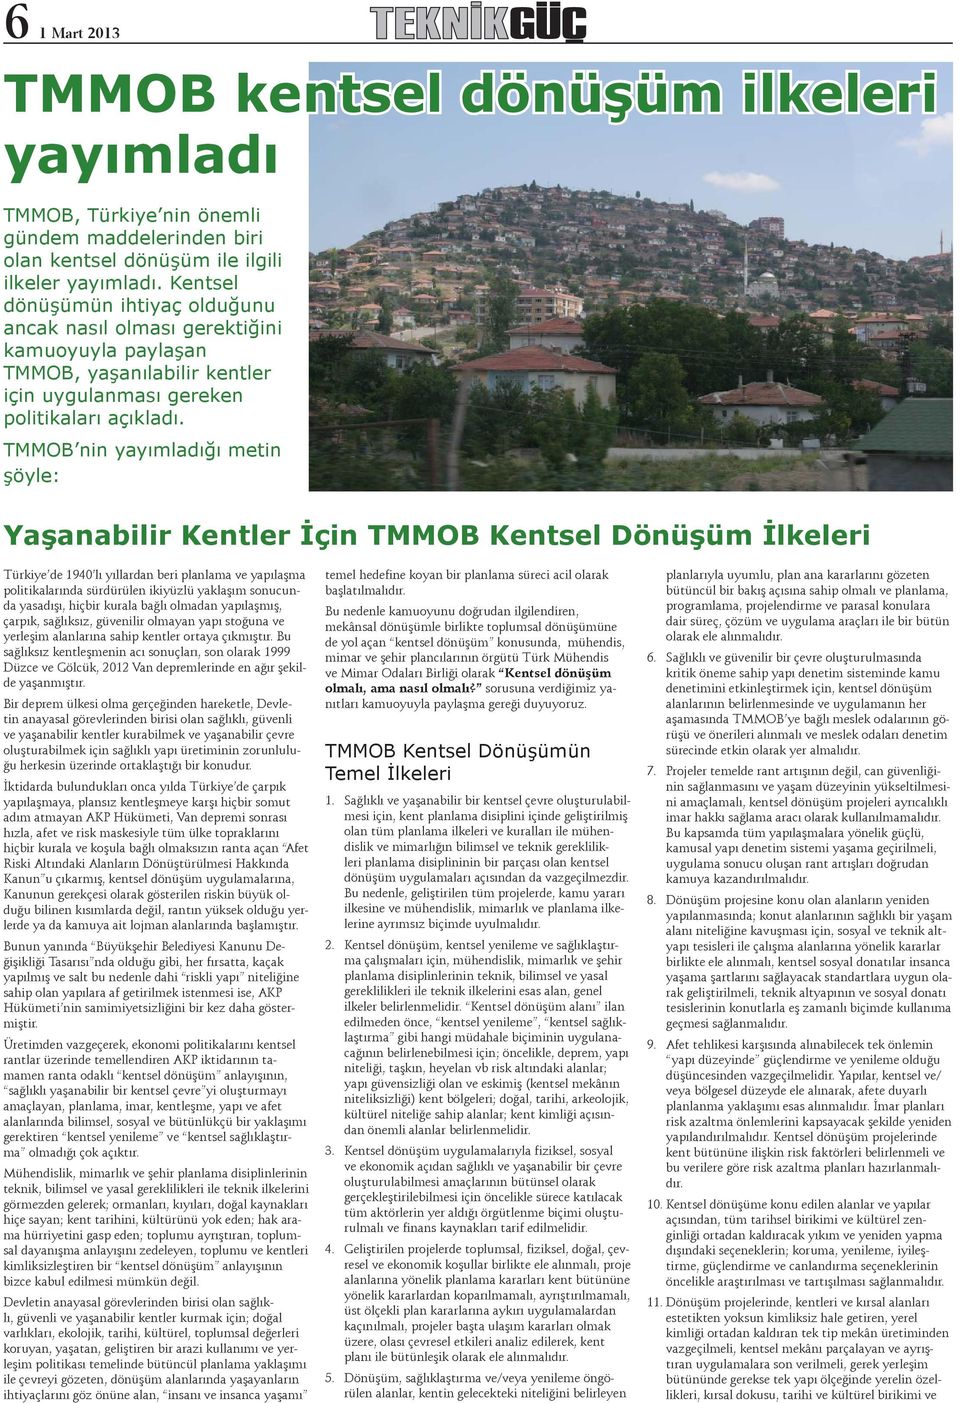 TMMOB nin yayımladığı metin şöyle: Yaşanabilir Kentler İçin TMMOB Kentsel Dönüşüm İlkeleri Türkiye de 1940 lı yıllardan beri planlama ve yapılaşma politikalarında sürdürülen ikiyüzlü yaklaşım